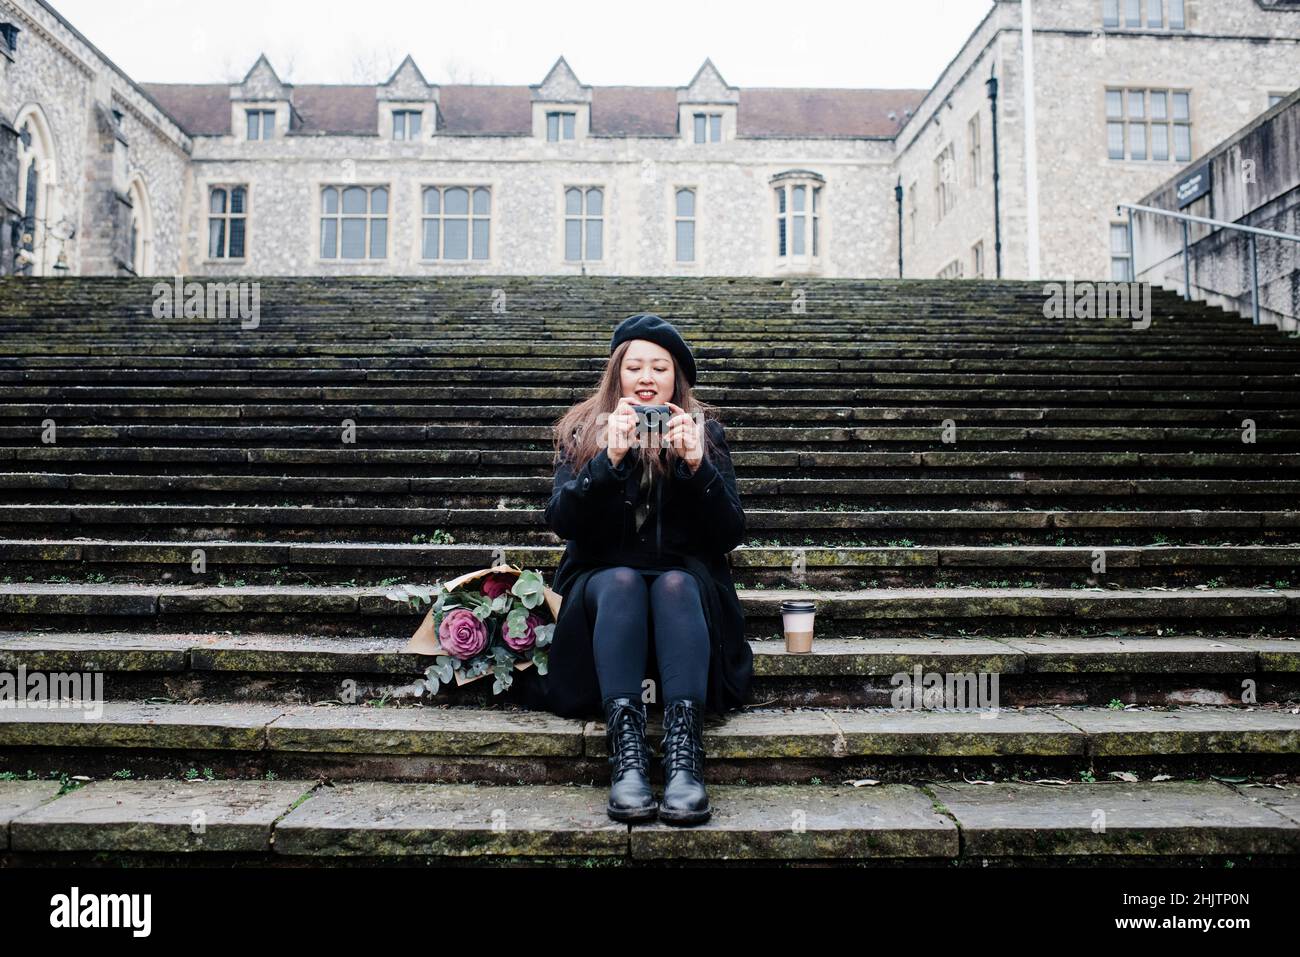 Une femme asiatique s'est assise sur des marches pour prendre des photos à Winchester, au Royaume-Uni Banque D'Images